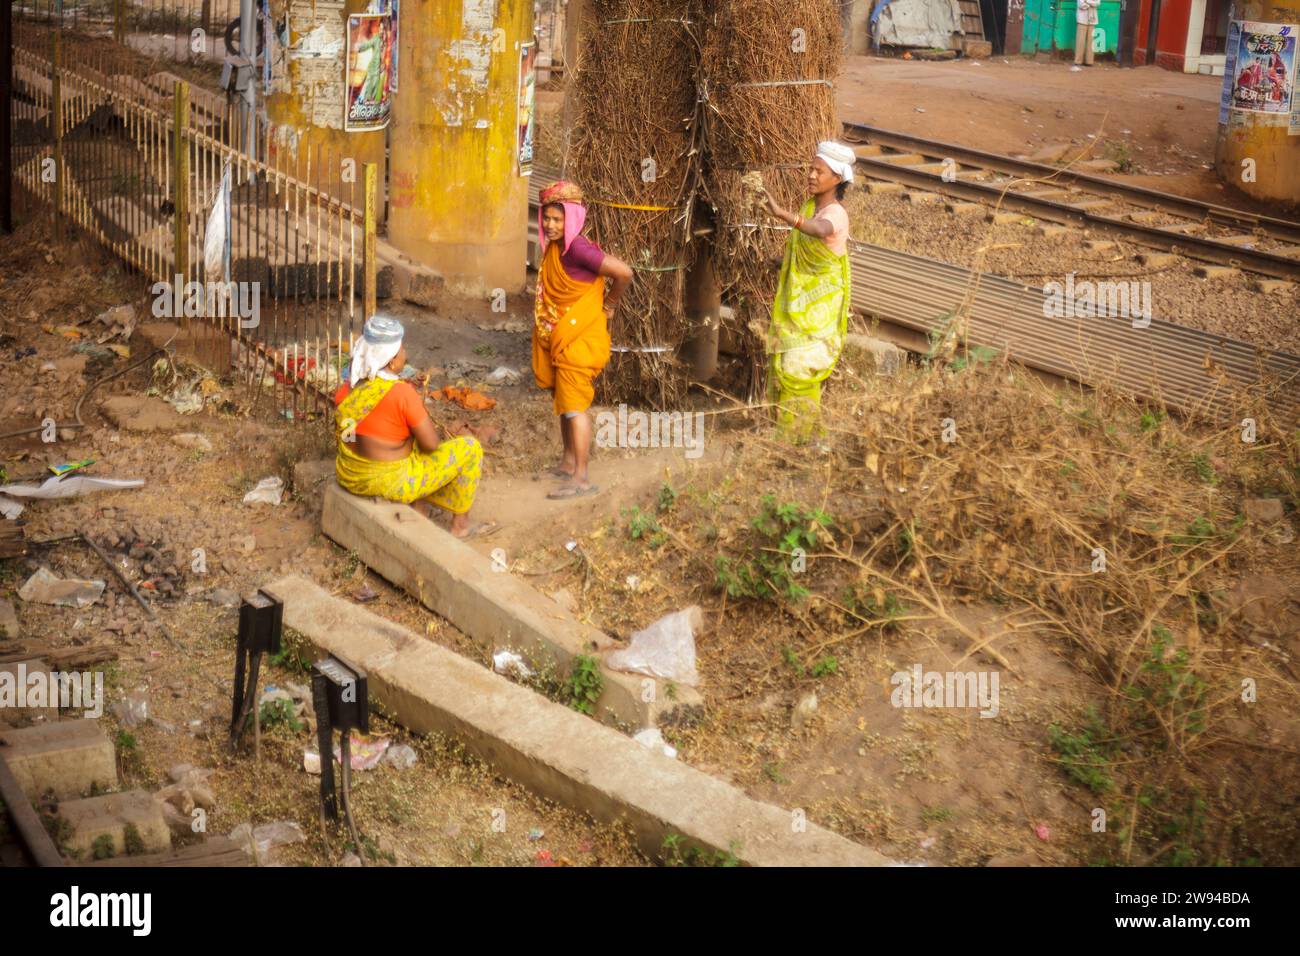 3 femmes indiennes travaillantes qui font une pause entre les voies ferrées. Employés des chemins de fer indiens. Niveau inférieur. Banque D'Images